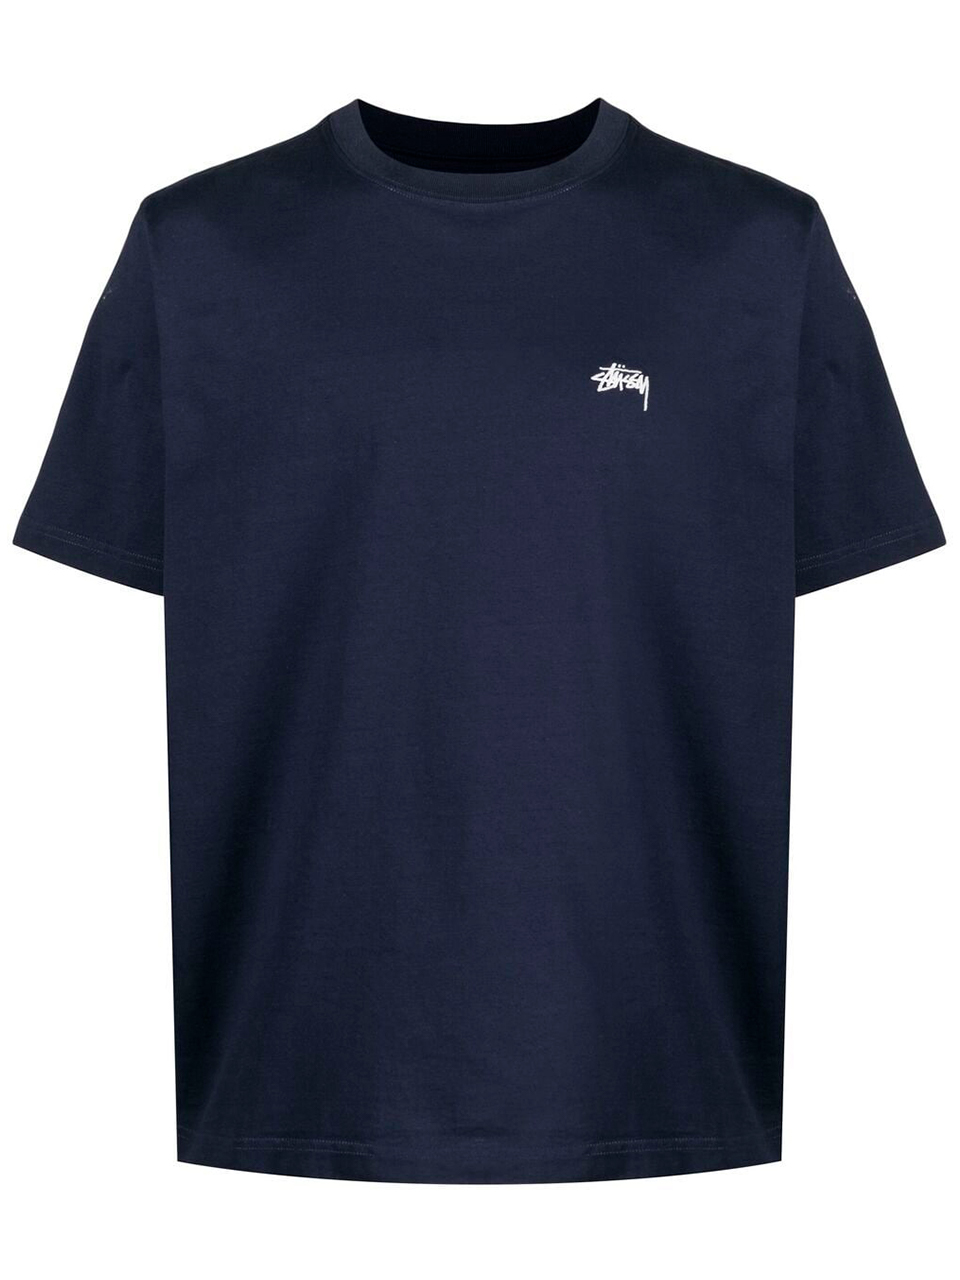 Imagem de: Camiseta Stussy Azul com Logo Bordado